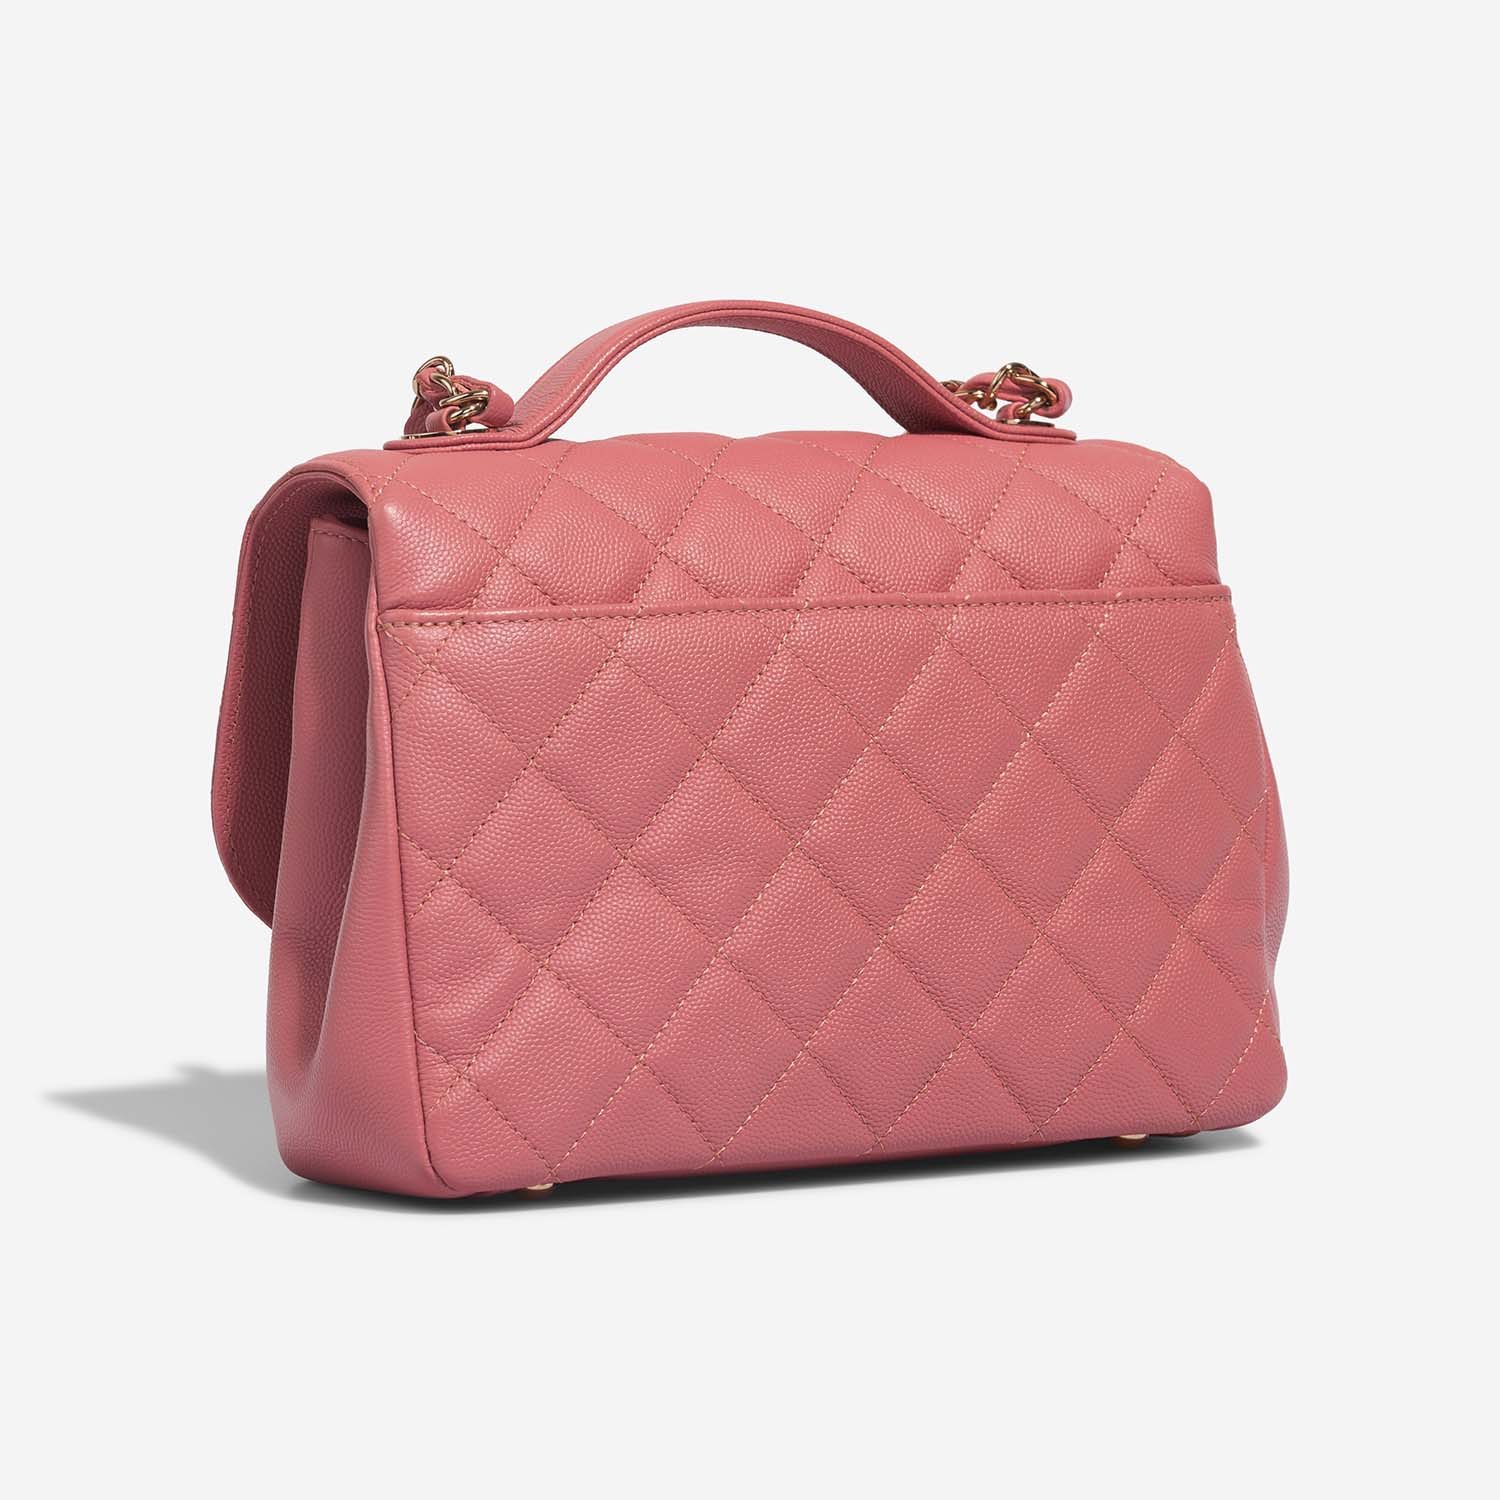 Chanel BusinessAffinity Medium PInk Side Back | Sell your designer bag on Saclab.com